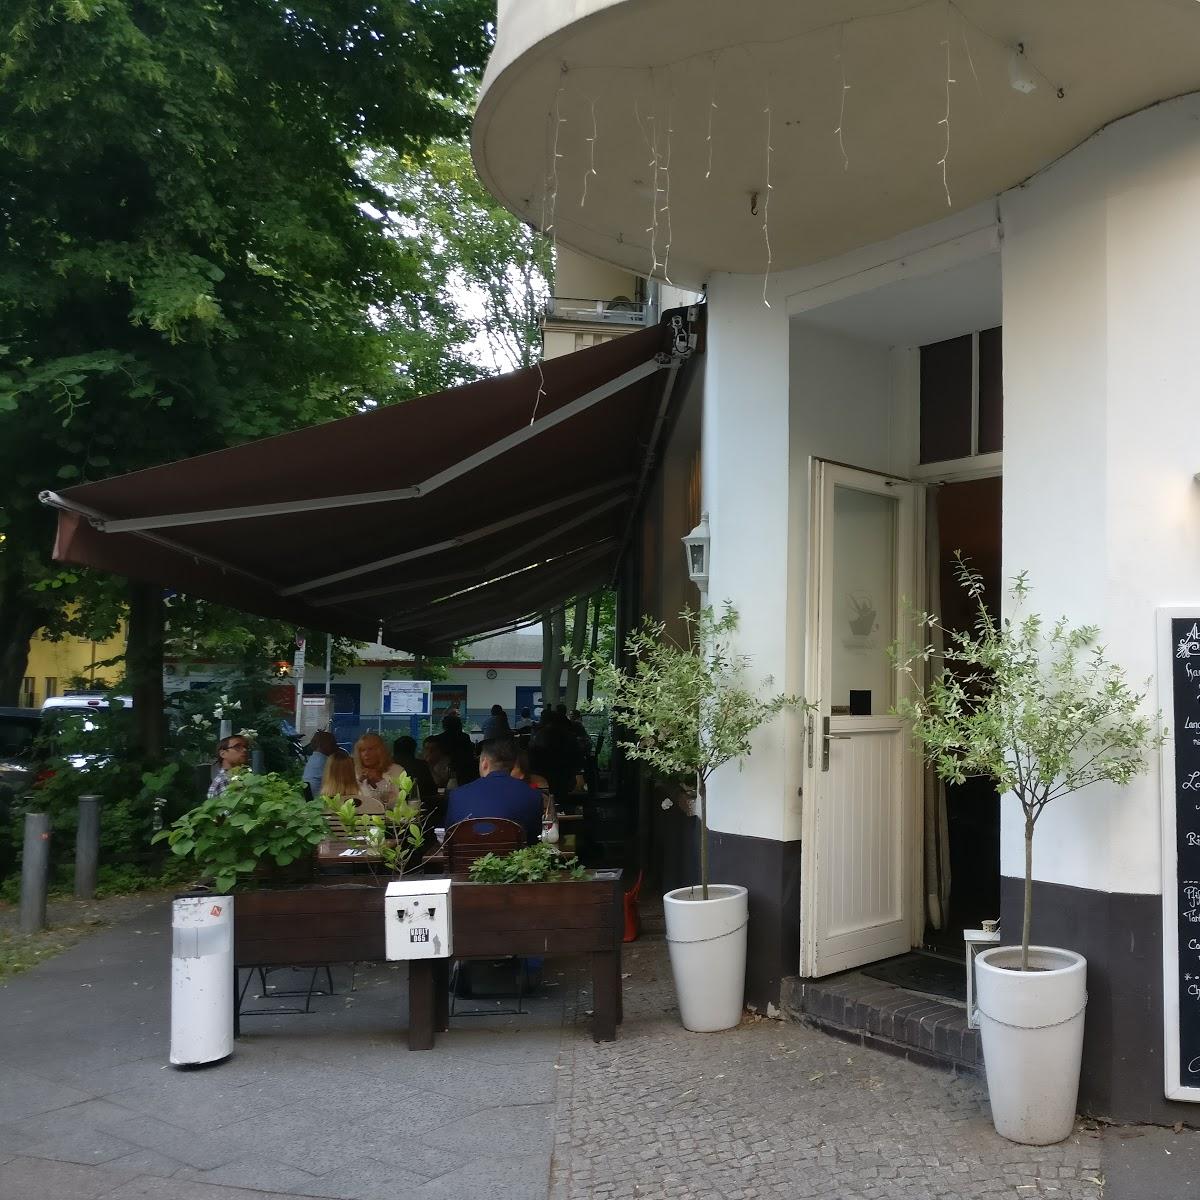 Restaurant "Restaurant Schneeweiß" in  Berlin